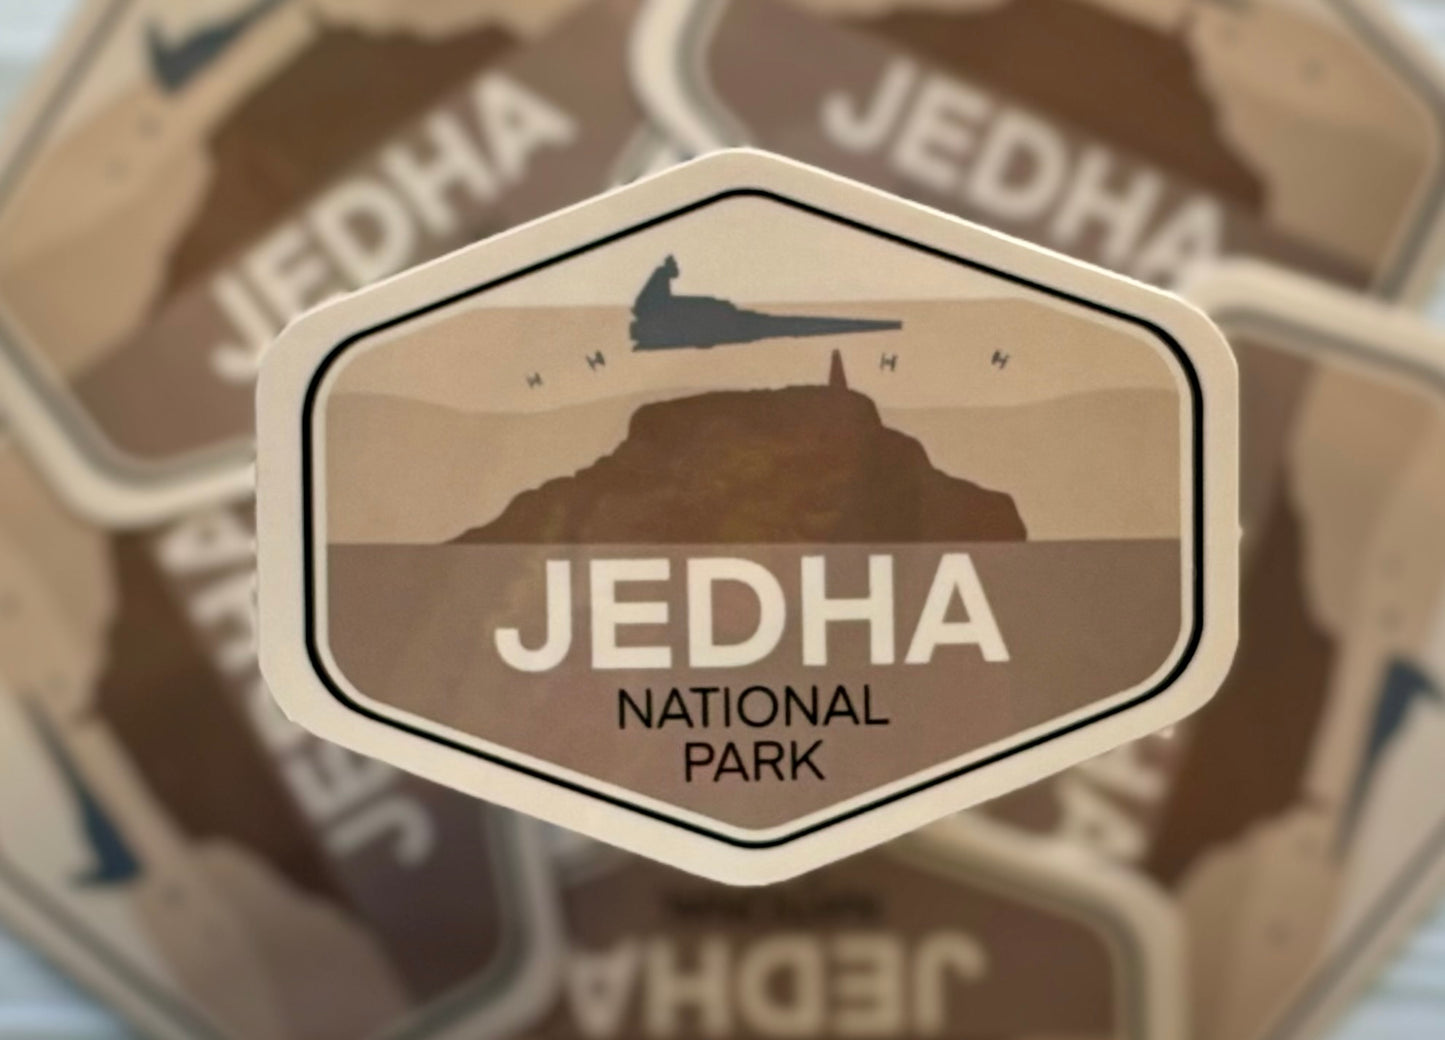 Star Wars National Park, Jedha, Vinyl Sticker